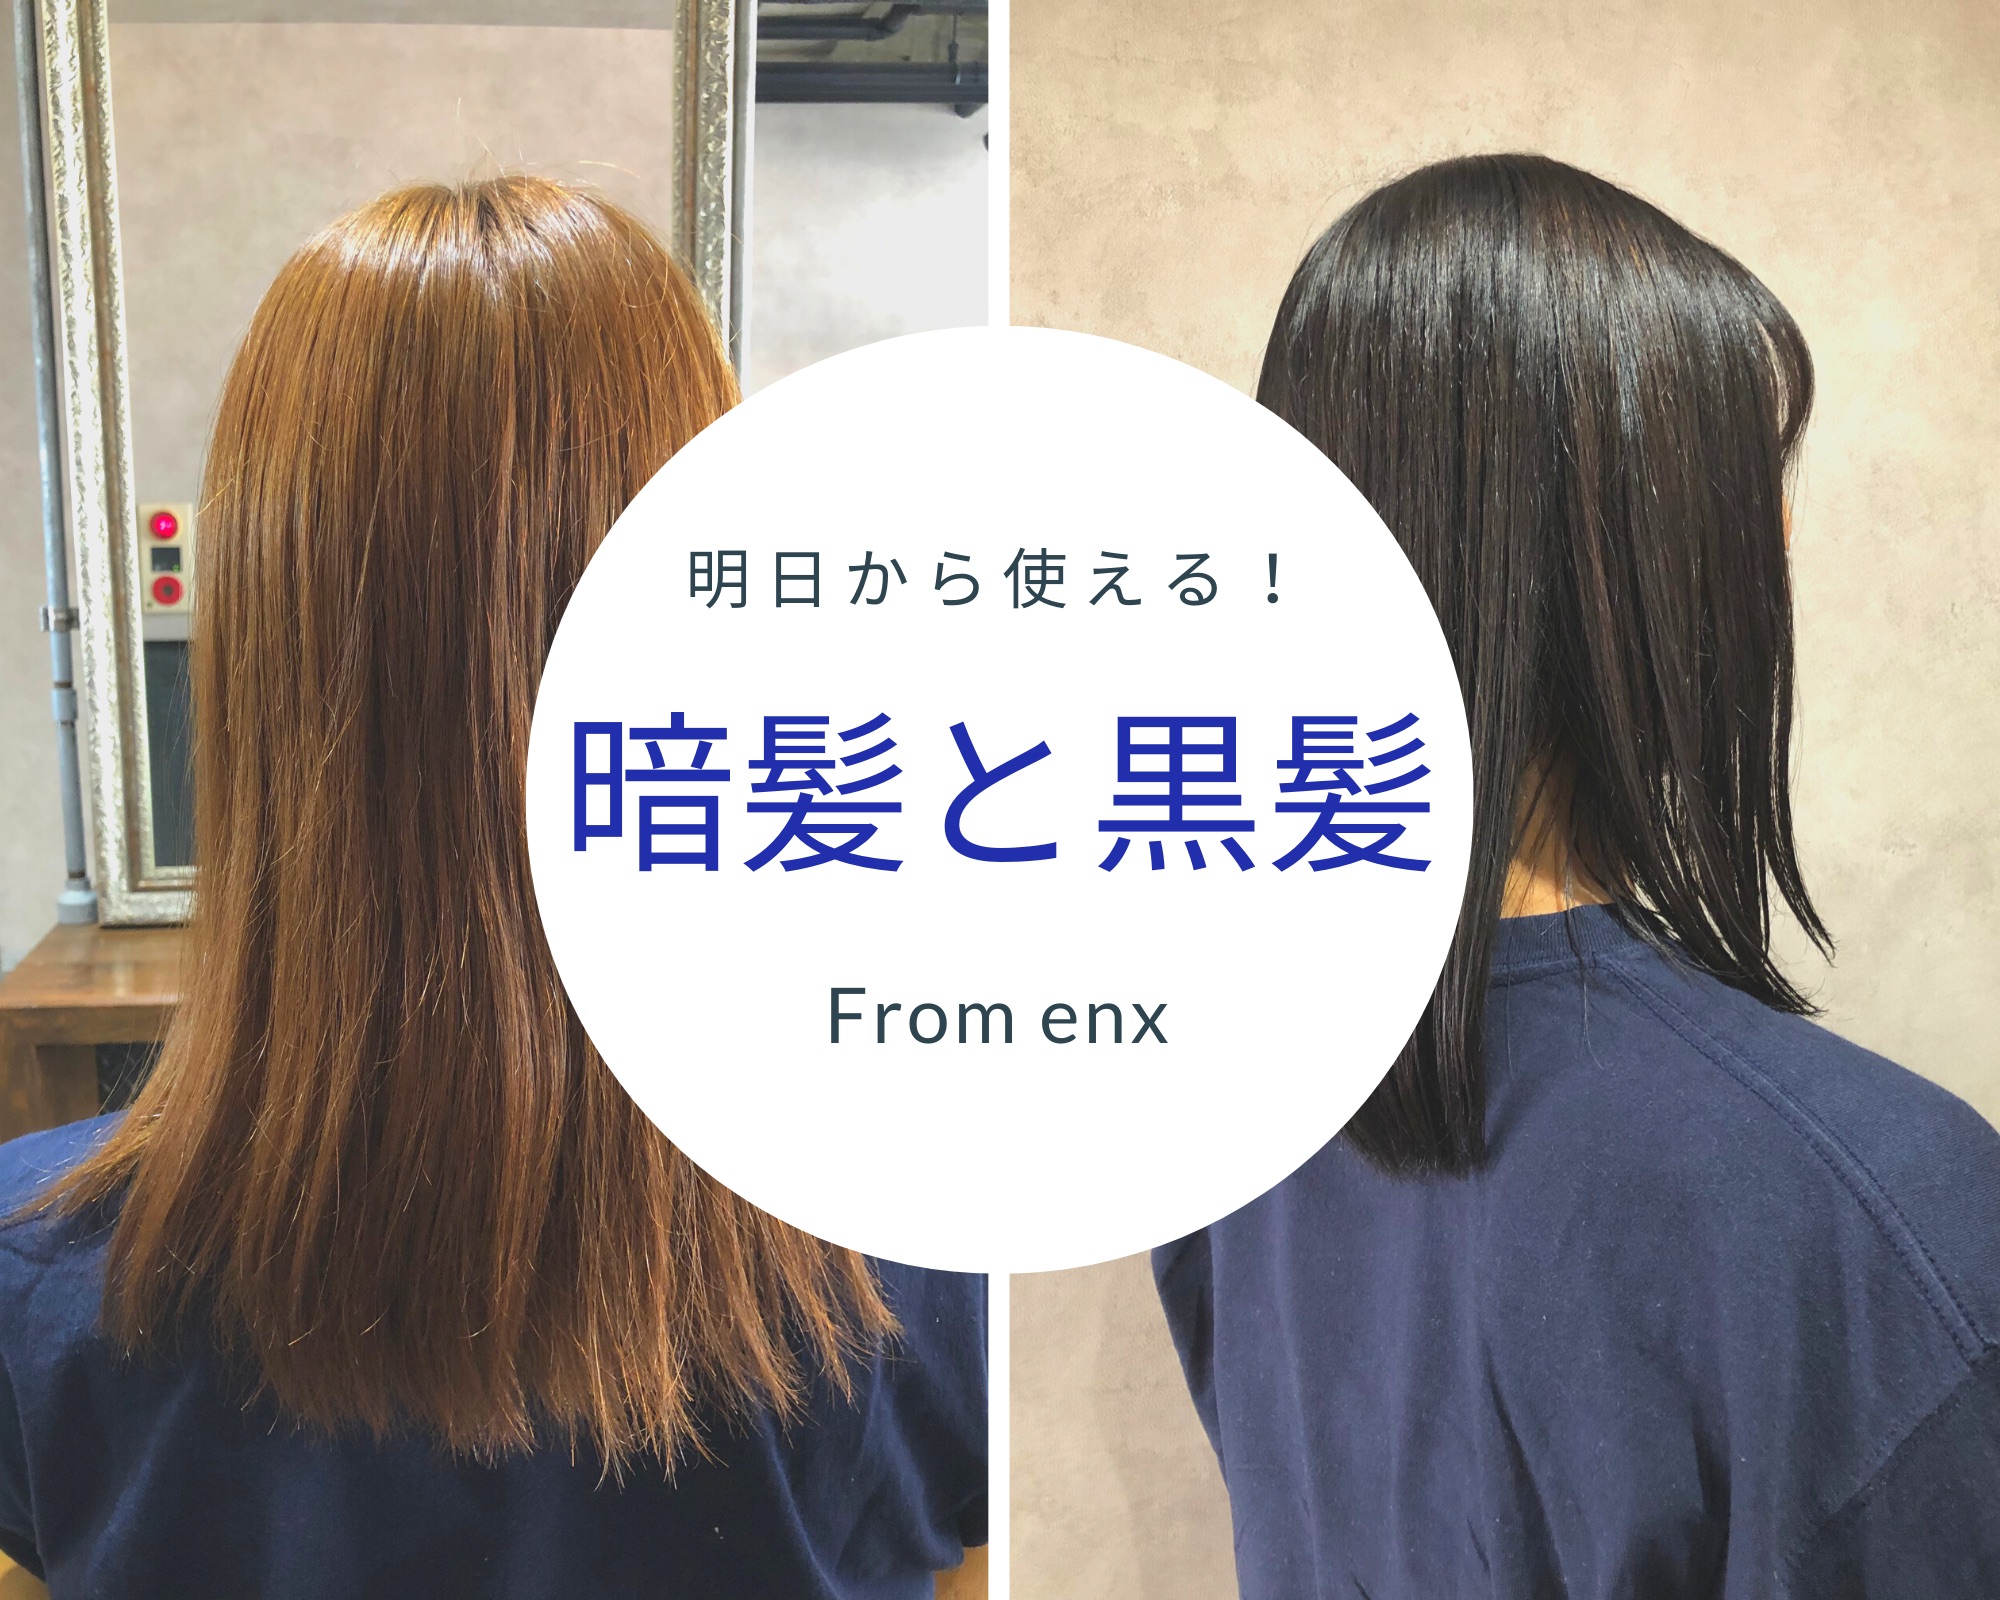 暗髪と黒髪の違いとは 脱黒染め ブルーを使った薬剤調合 配合方法とは 横浜 鶴ヶ峰 上手い 得意 美容師 美容室 ヘアサロン Enx